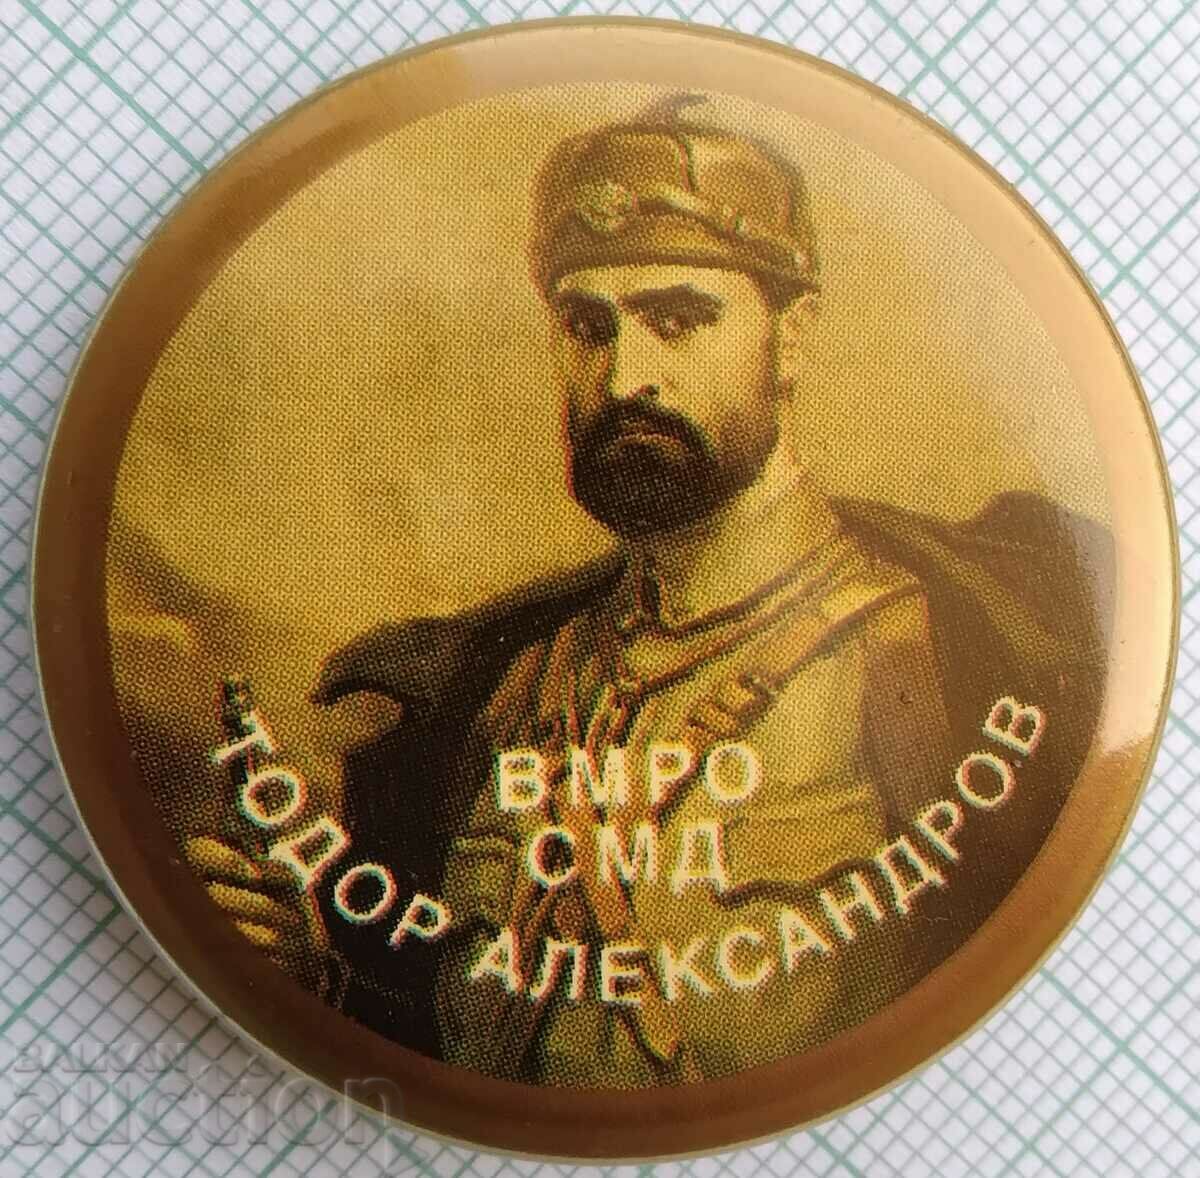 15405 Badge - VMRO Todor Alexandrov